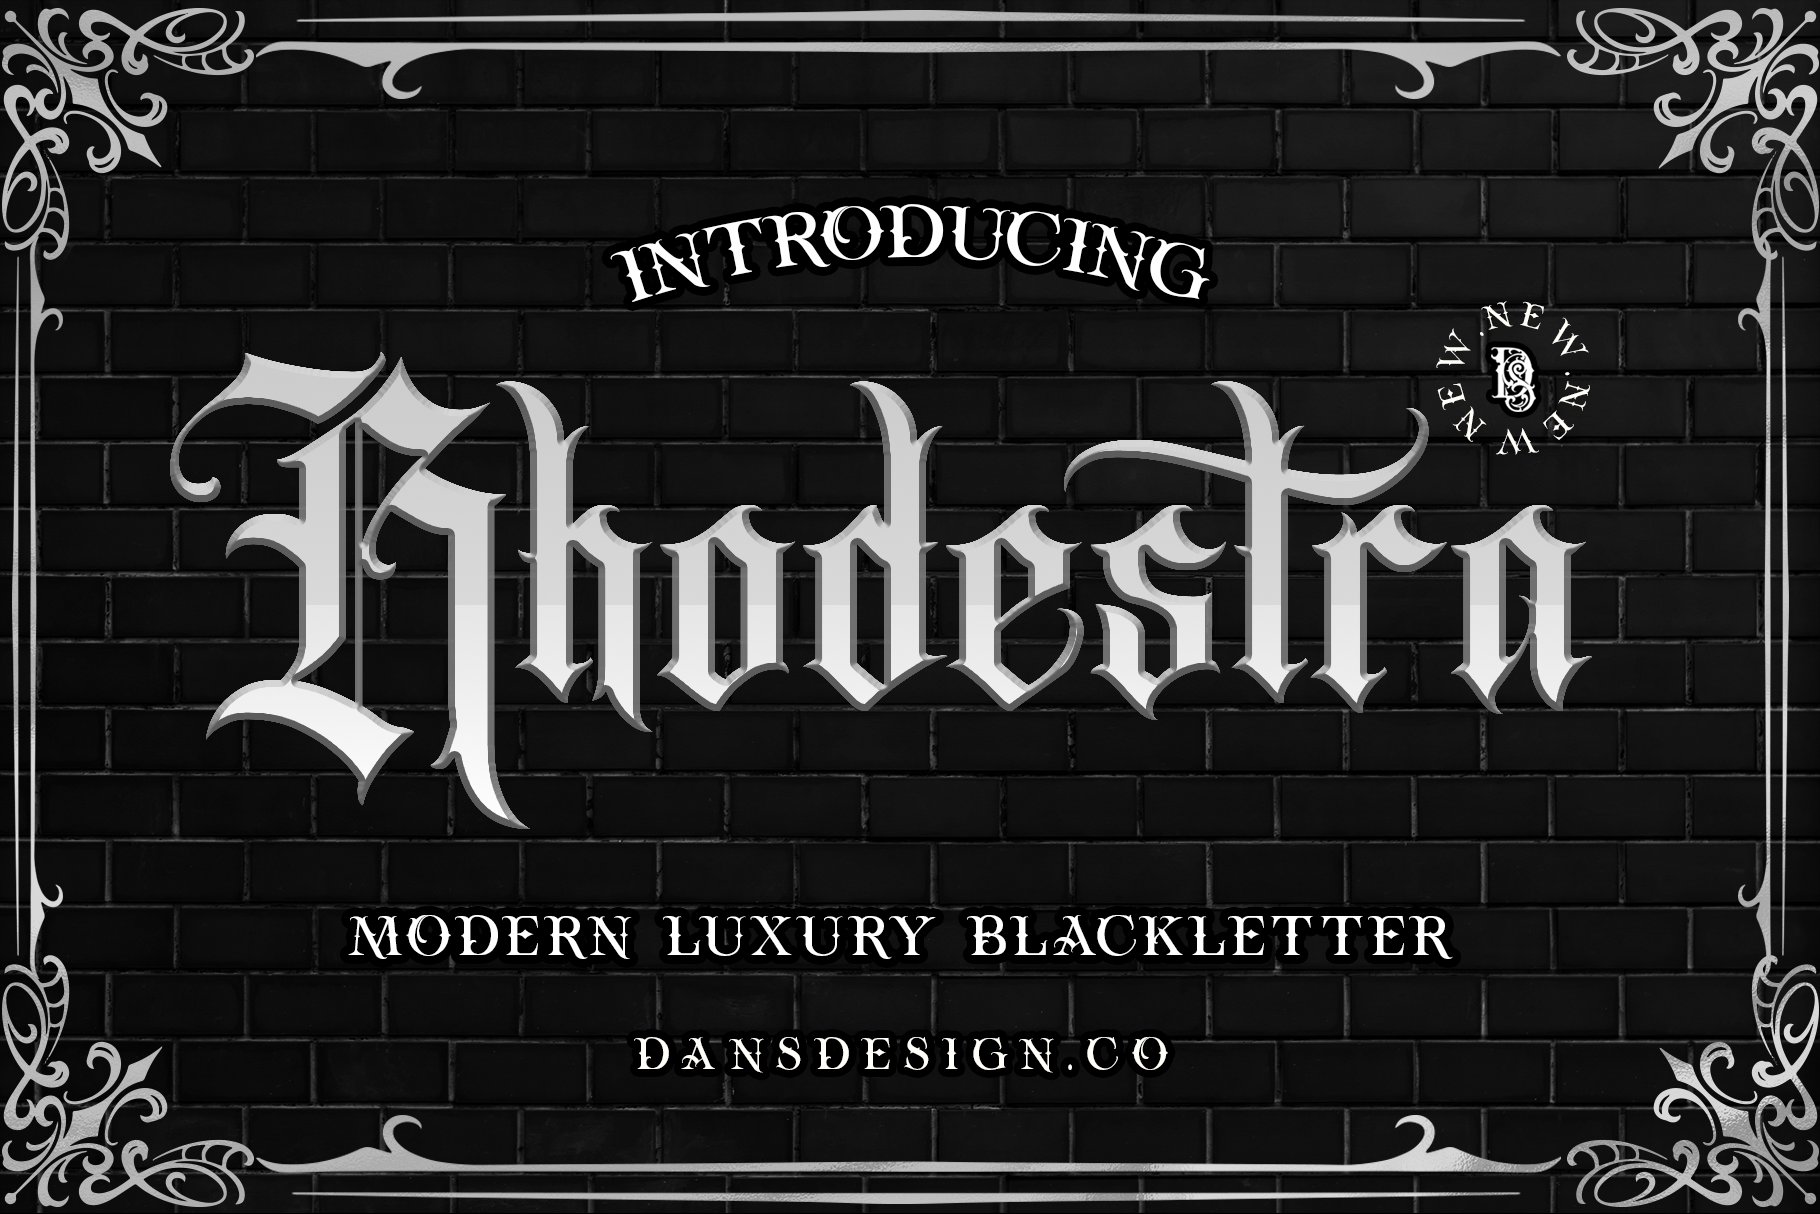 Rhodestra Blackletter cover image.